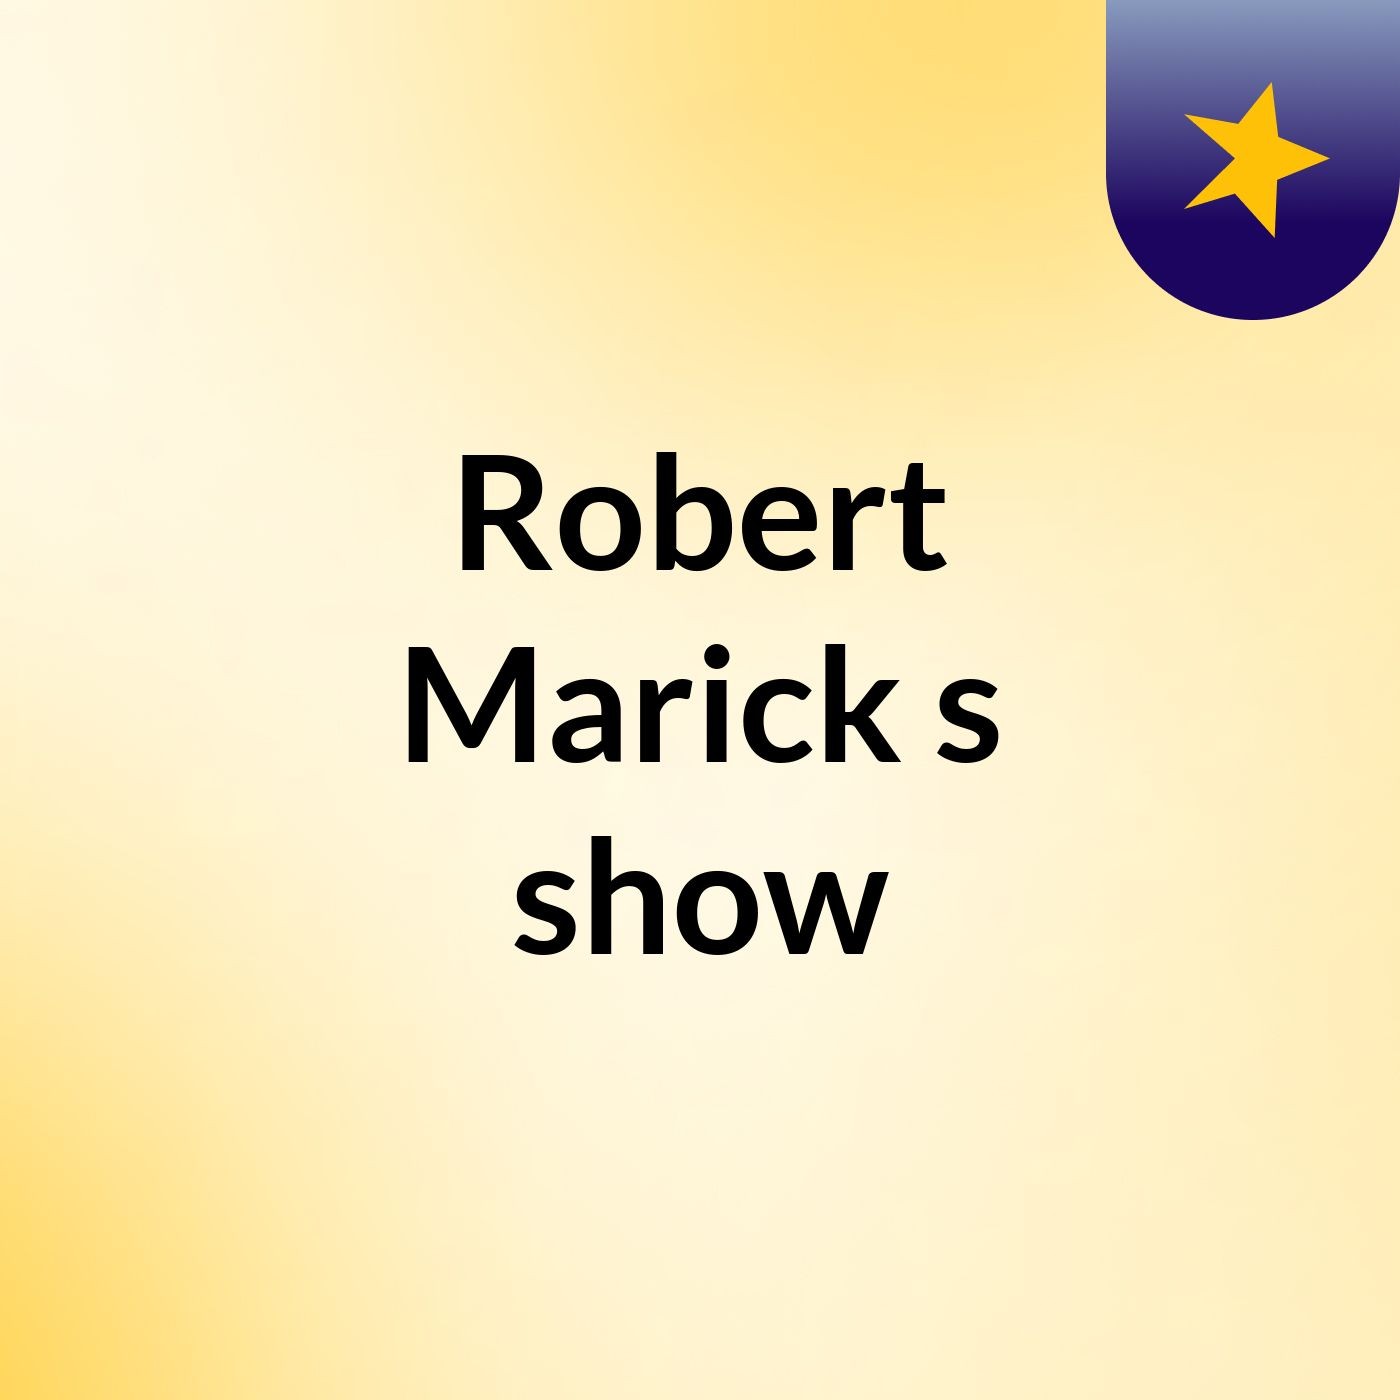 Robert Marick's show